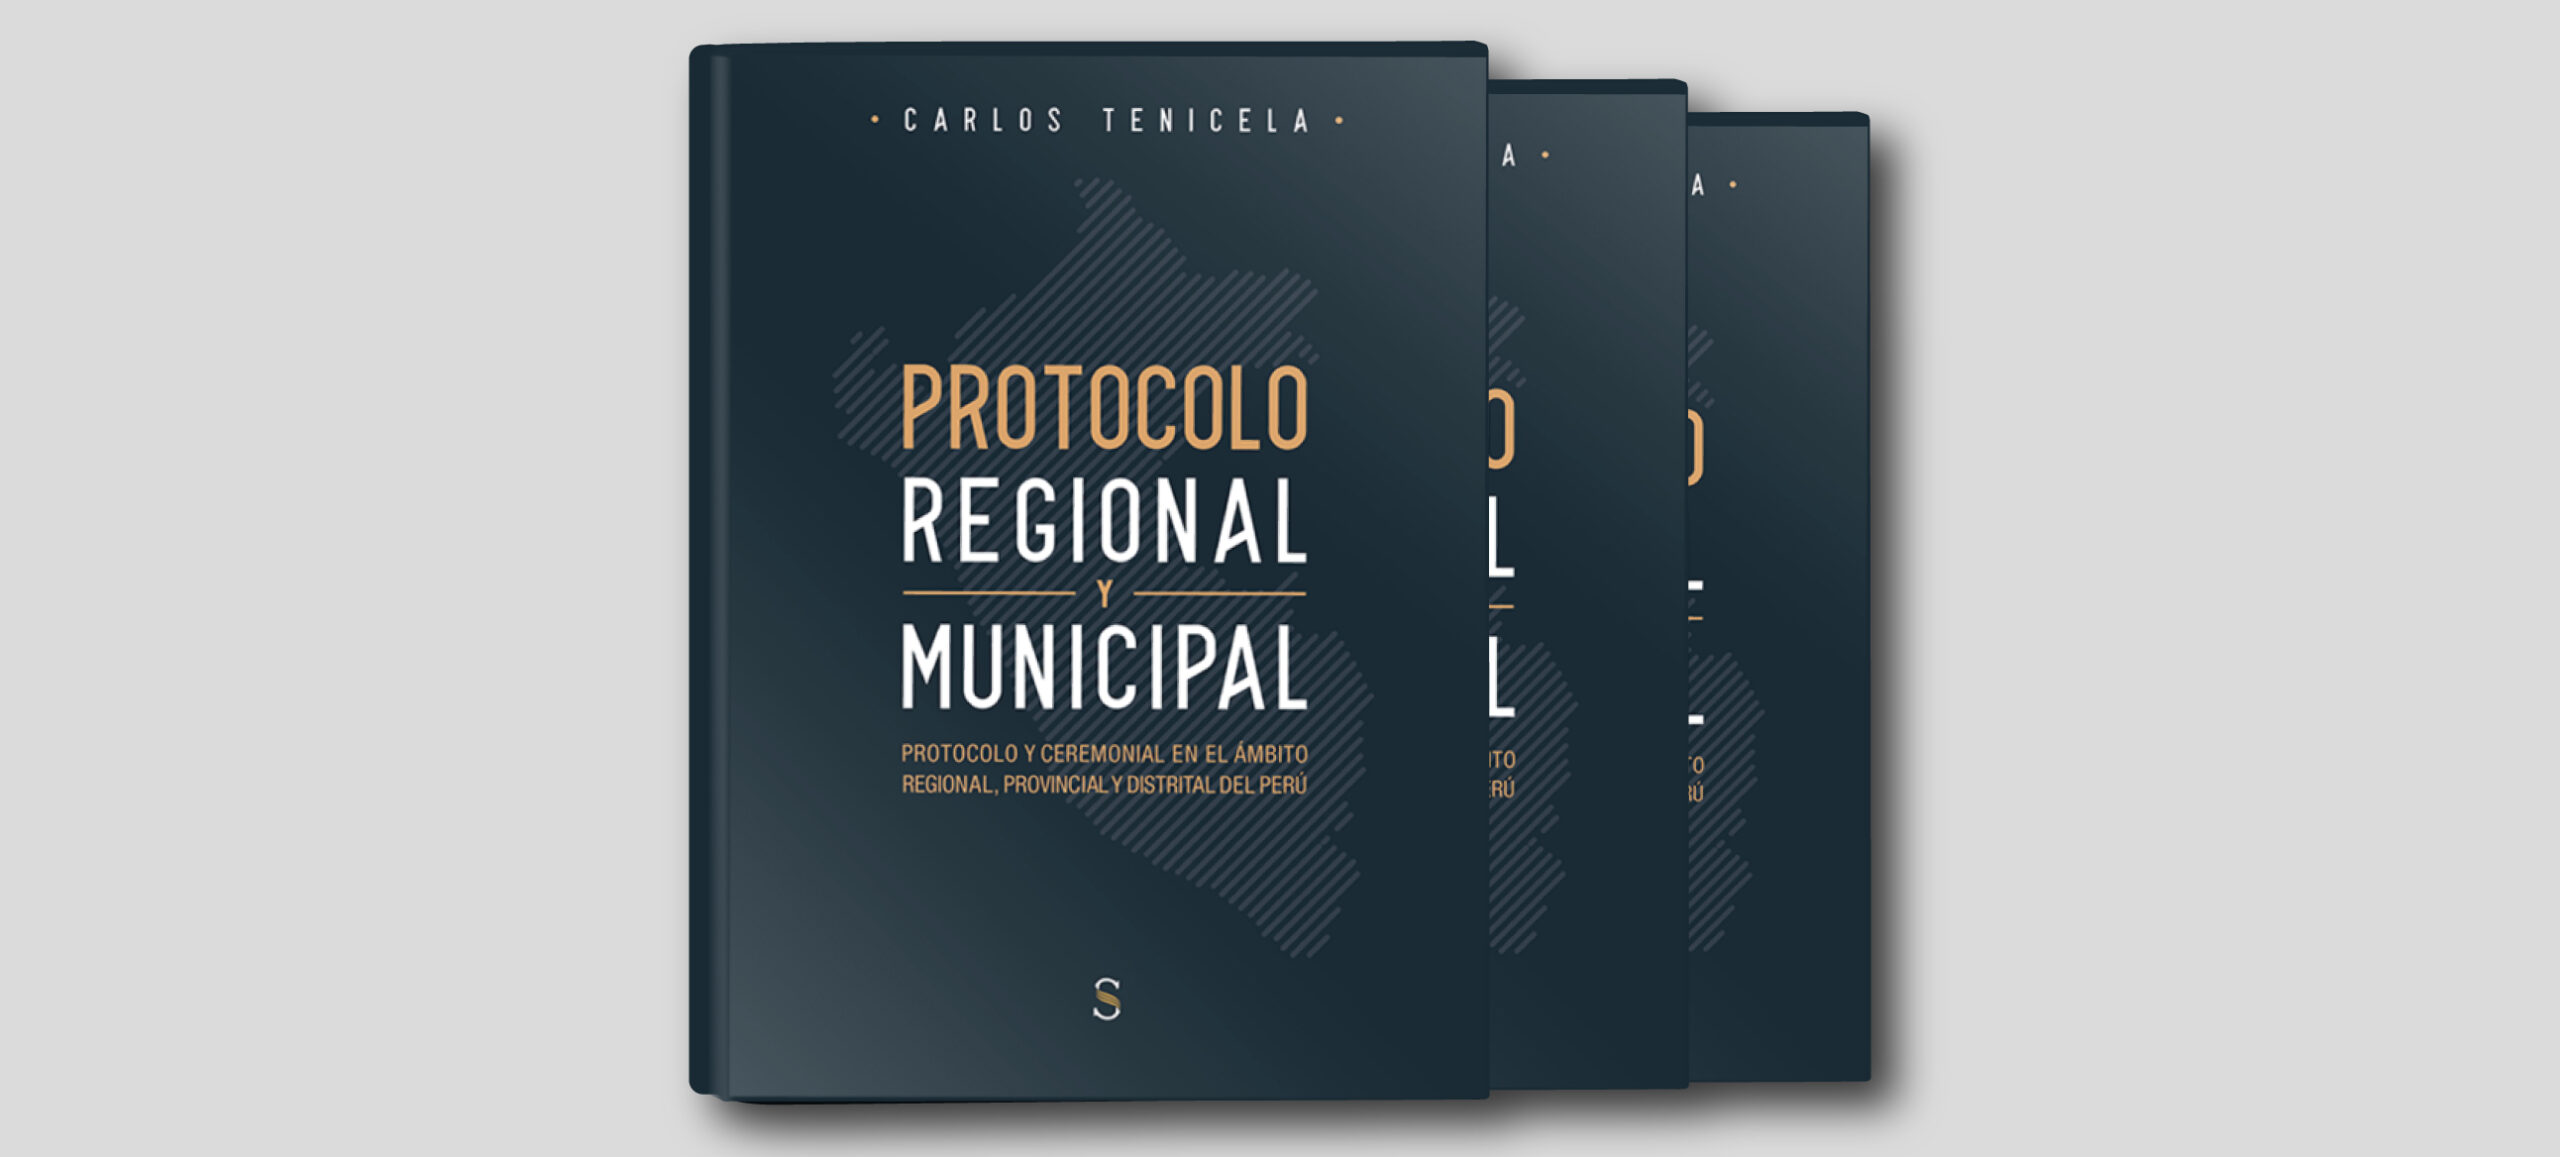 PROTOCOLO REGIONAL Y MUNICIPAL un libro de CARLOS TENICELA